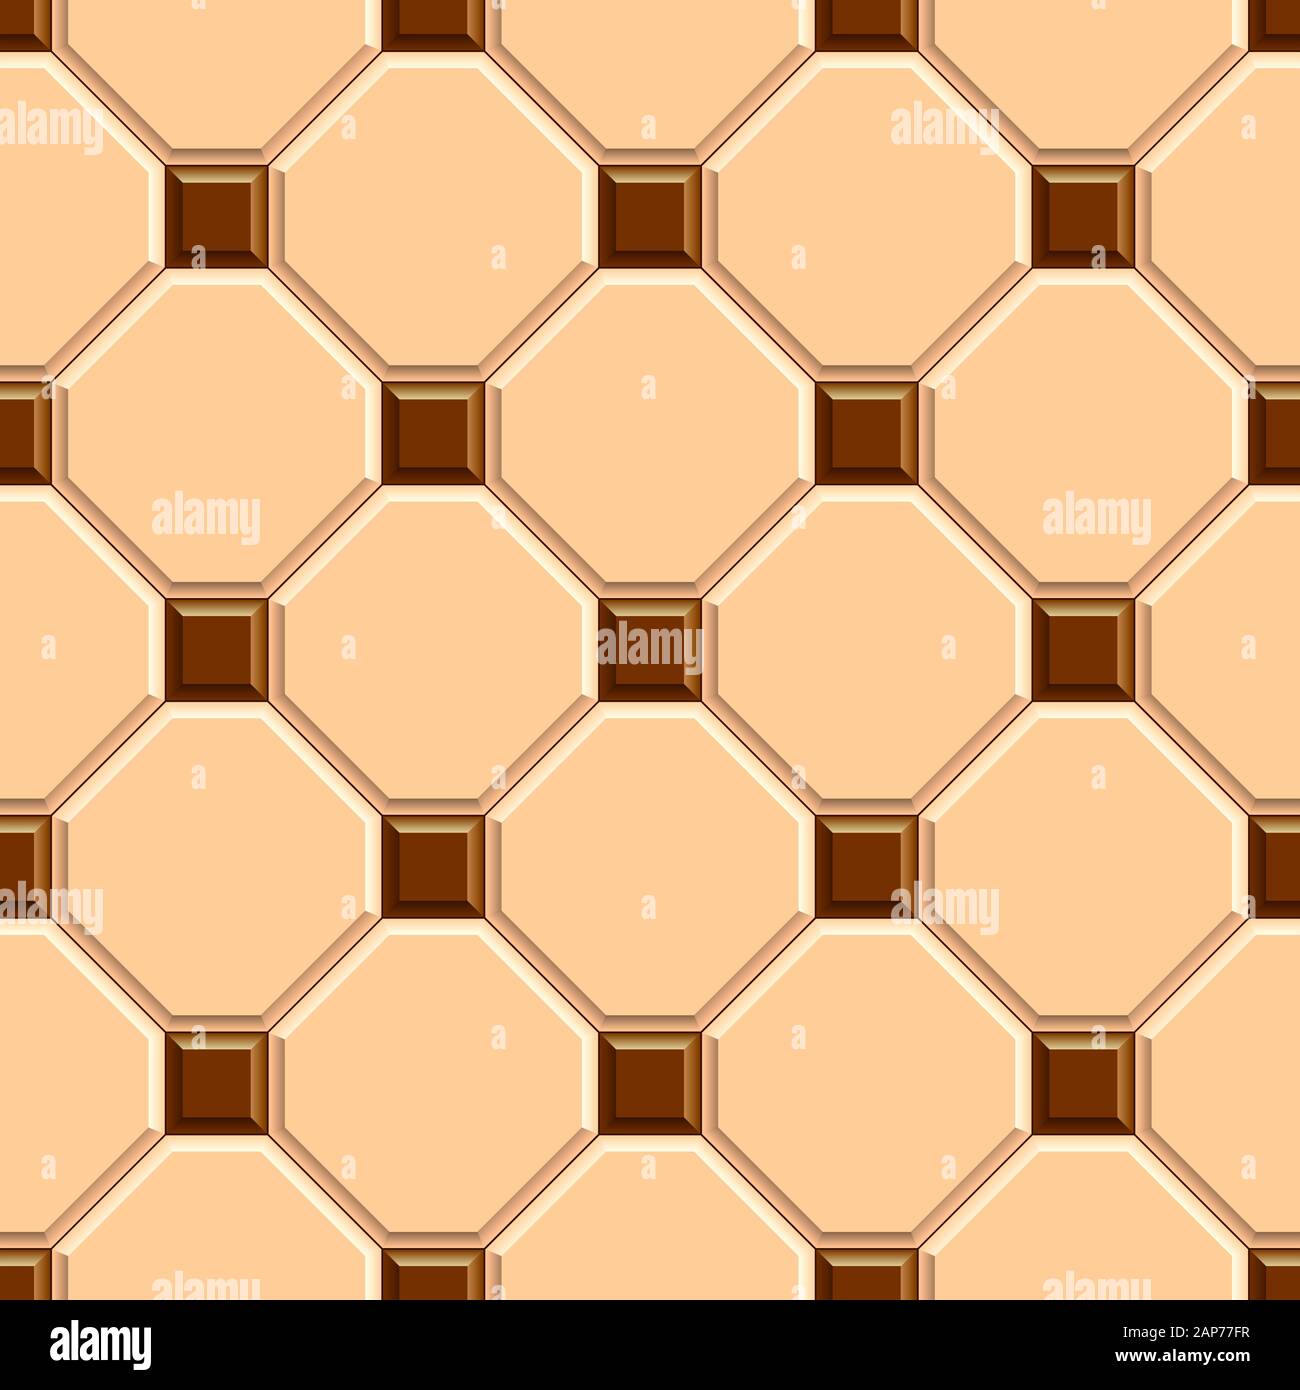 Nahtlose Textur von beigefarbenen Rhombus-Bodenfliesen mit braunen quadratischen Punkten. 3D-wiederholtes Muster von Keramikpflaster Stockfoto